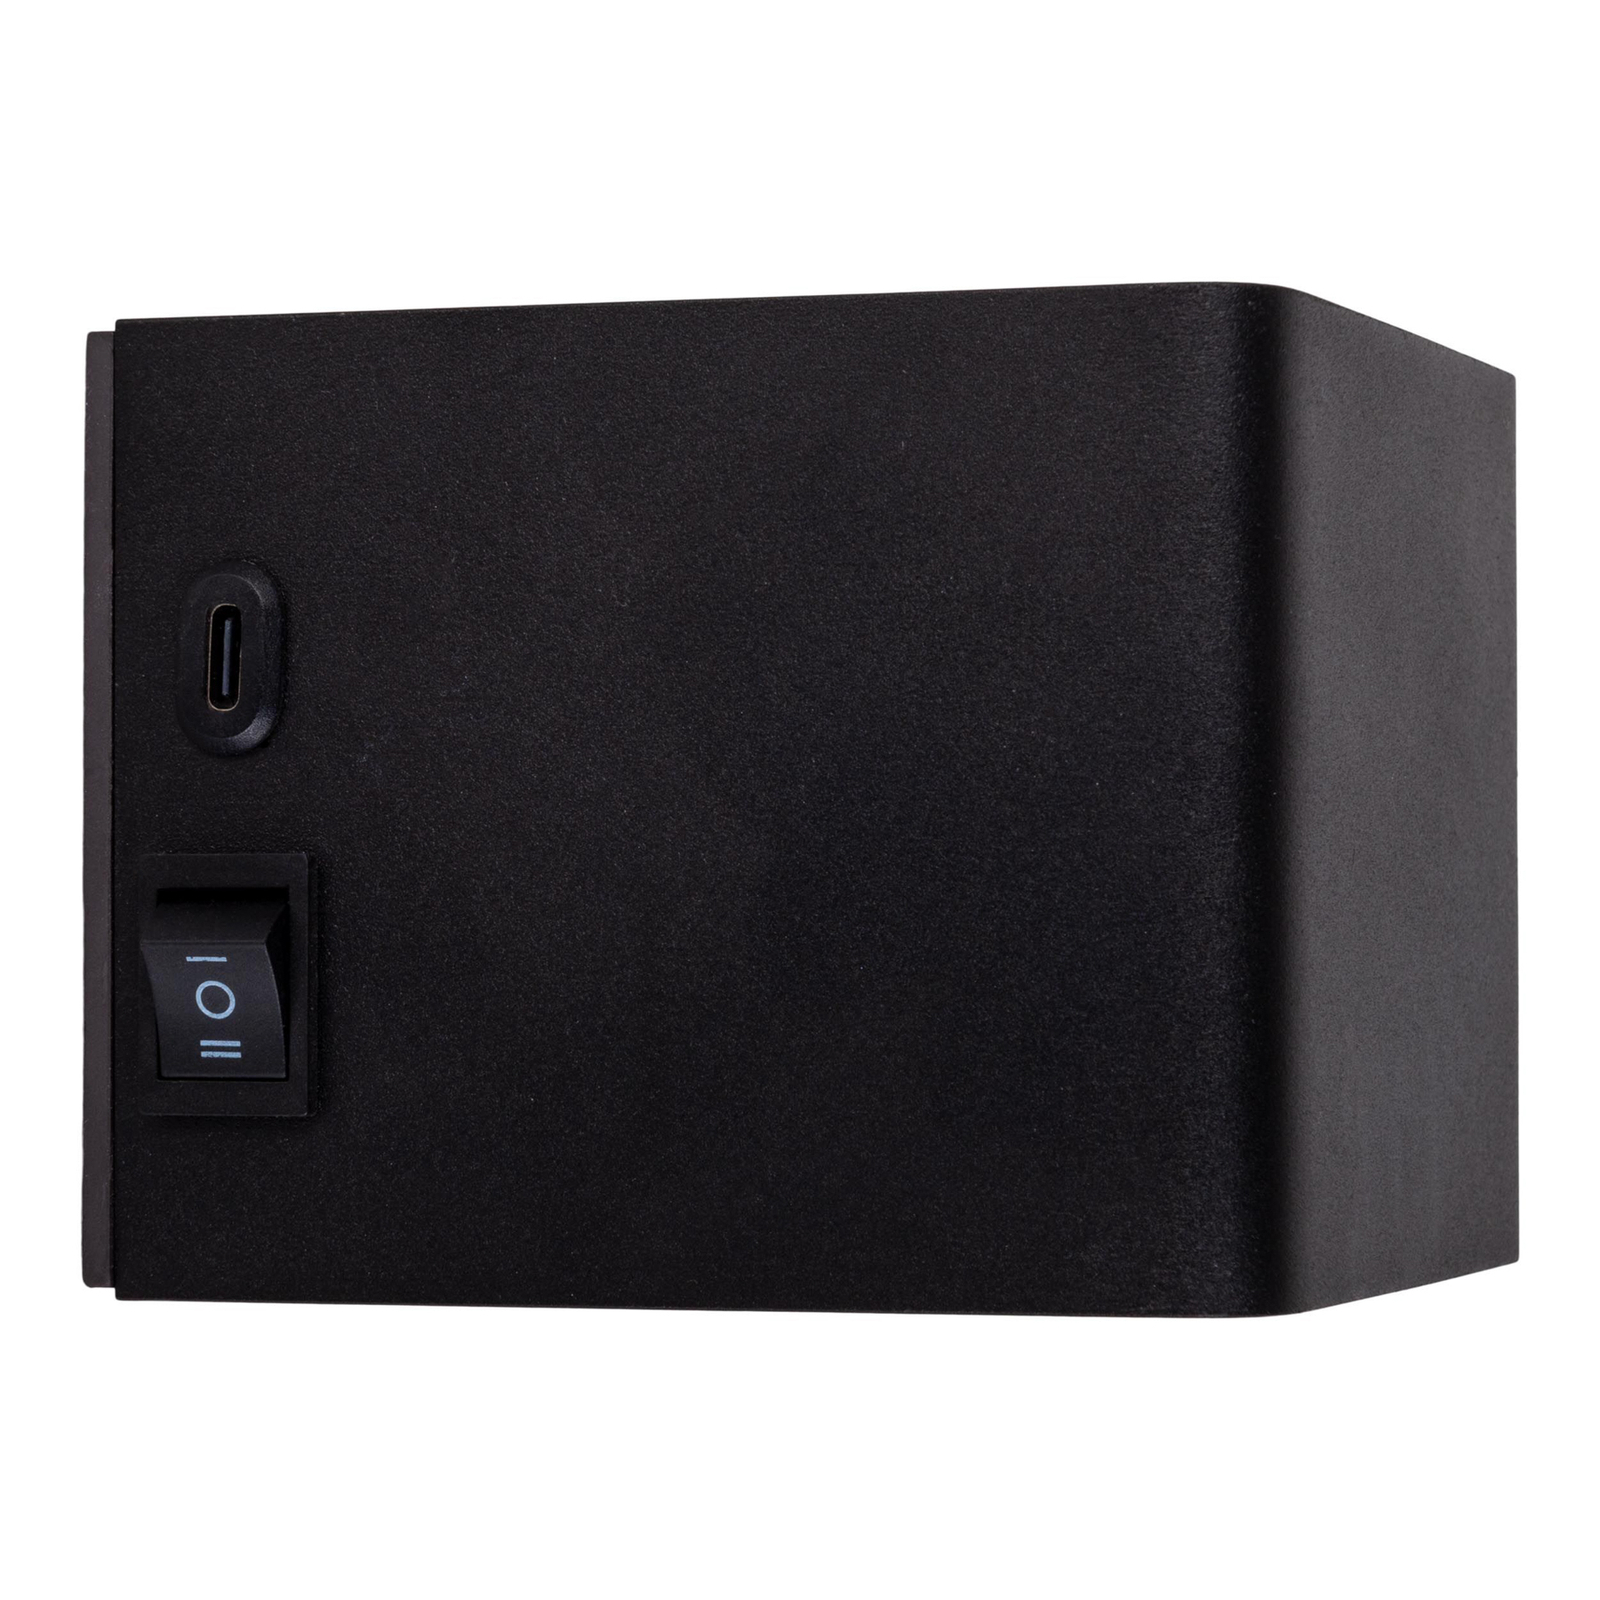 LED-vegglampe Cube batteri, magnetisk, svart